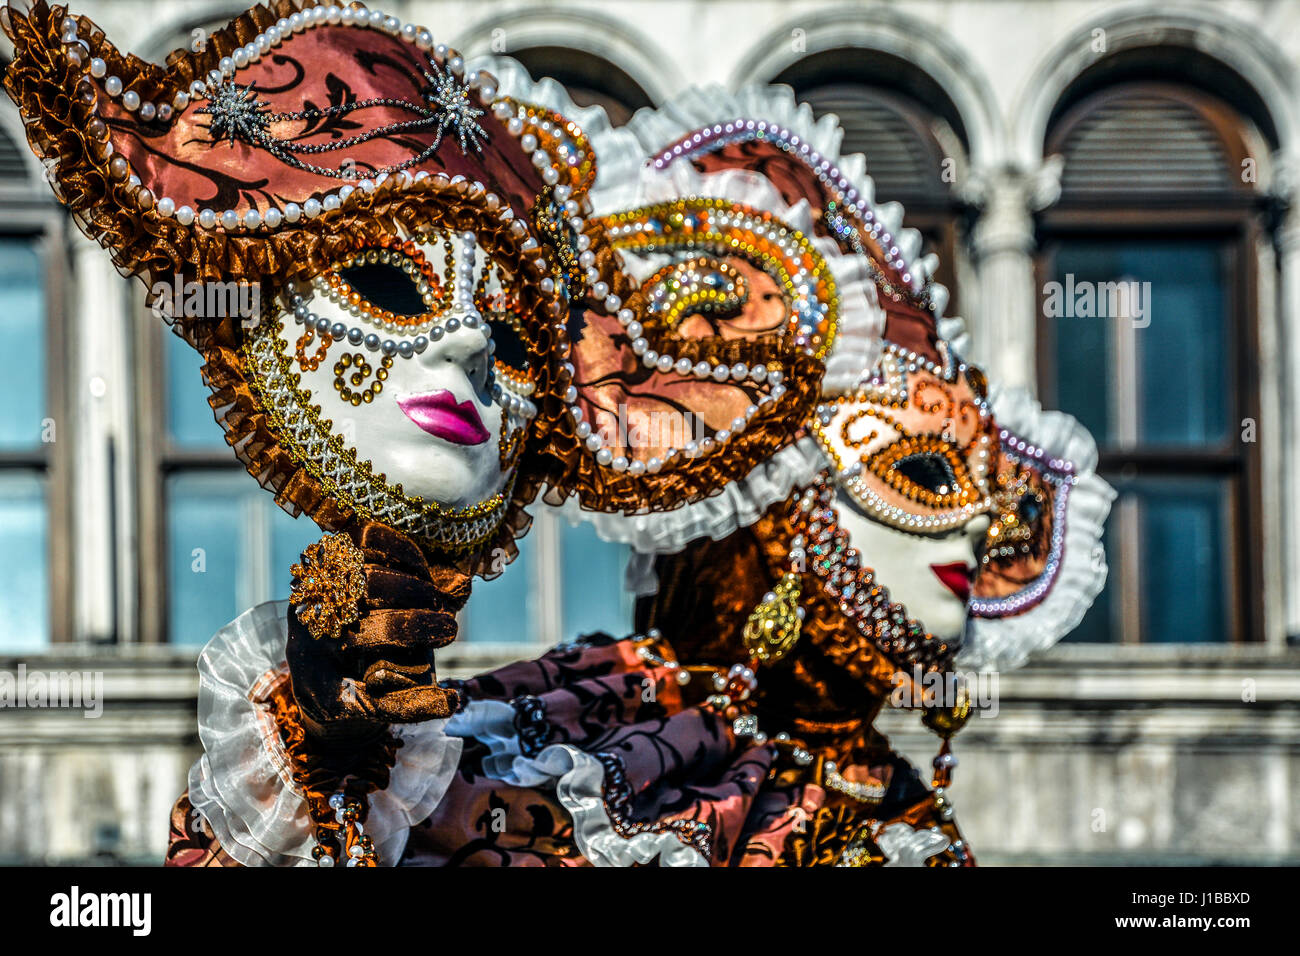 Schöne Masken in geheimnisvollen Farben venezianische Maske. Modefoto.  Feiertage und feste Stockfotografie - Alamy